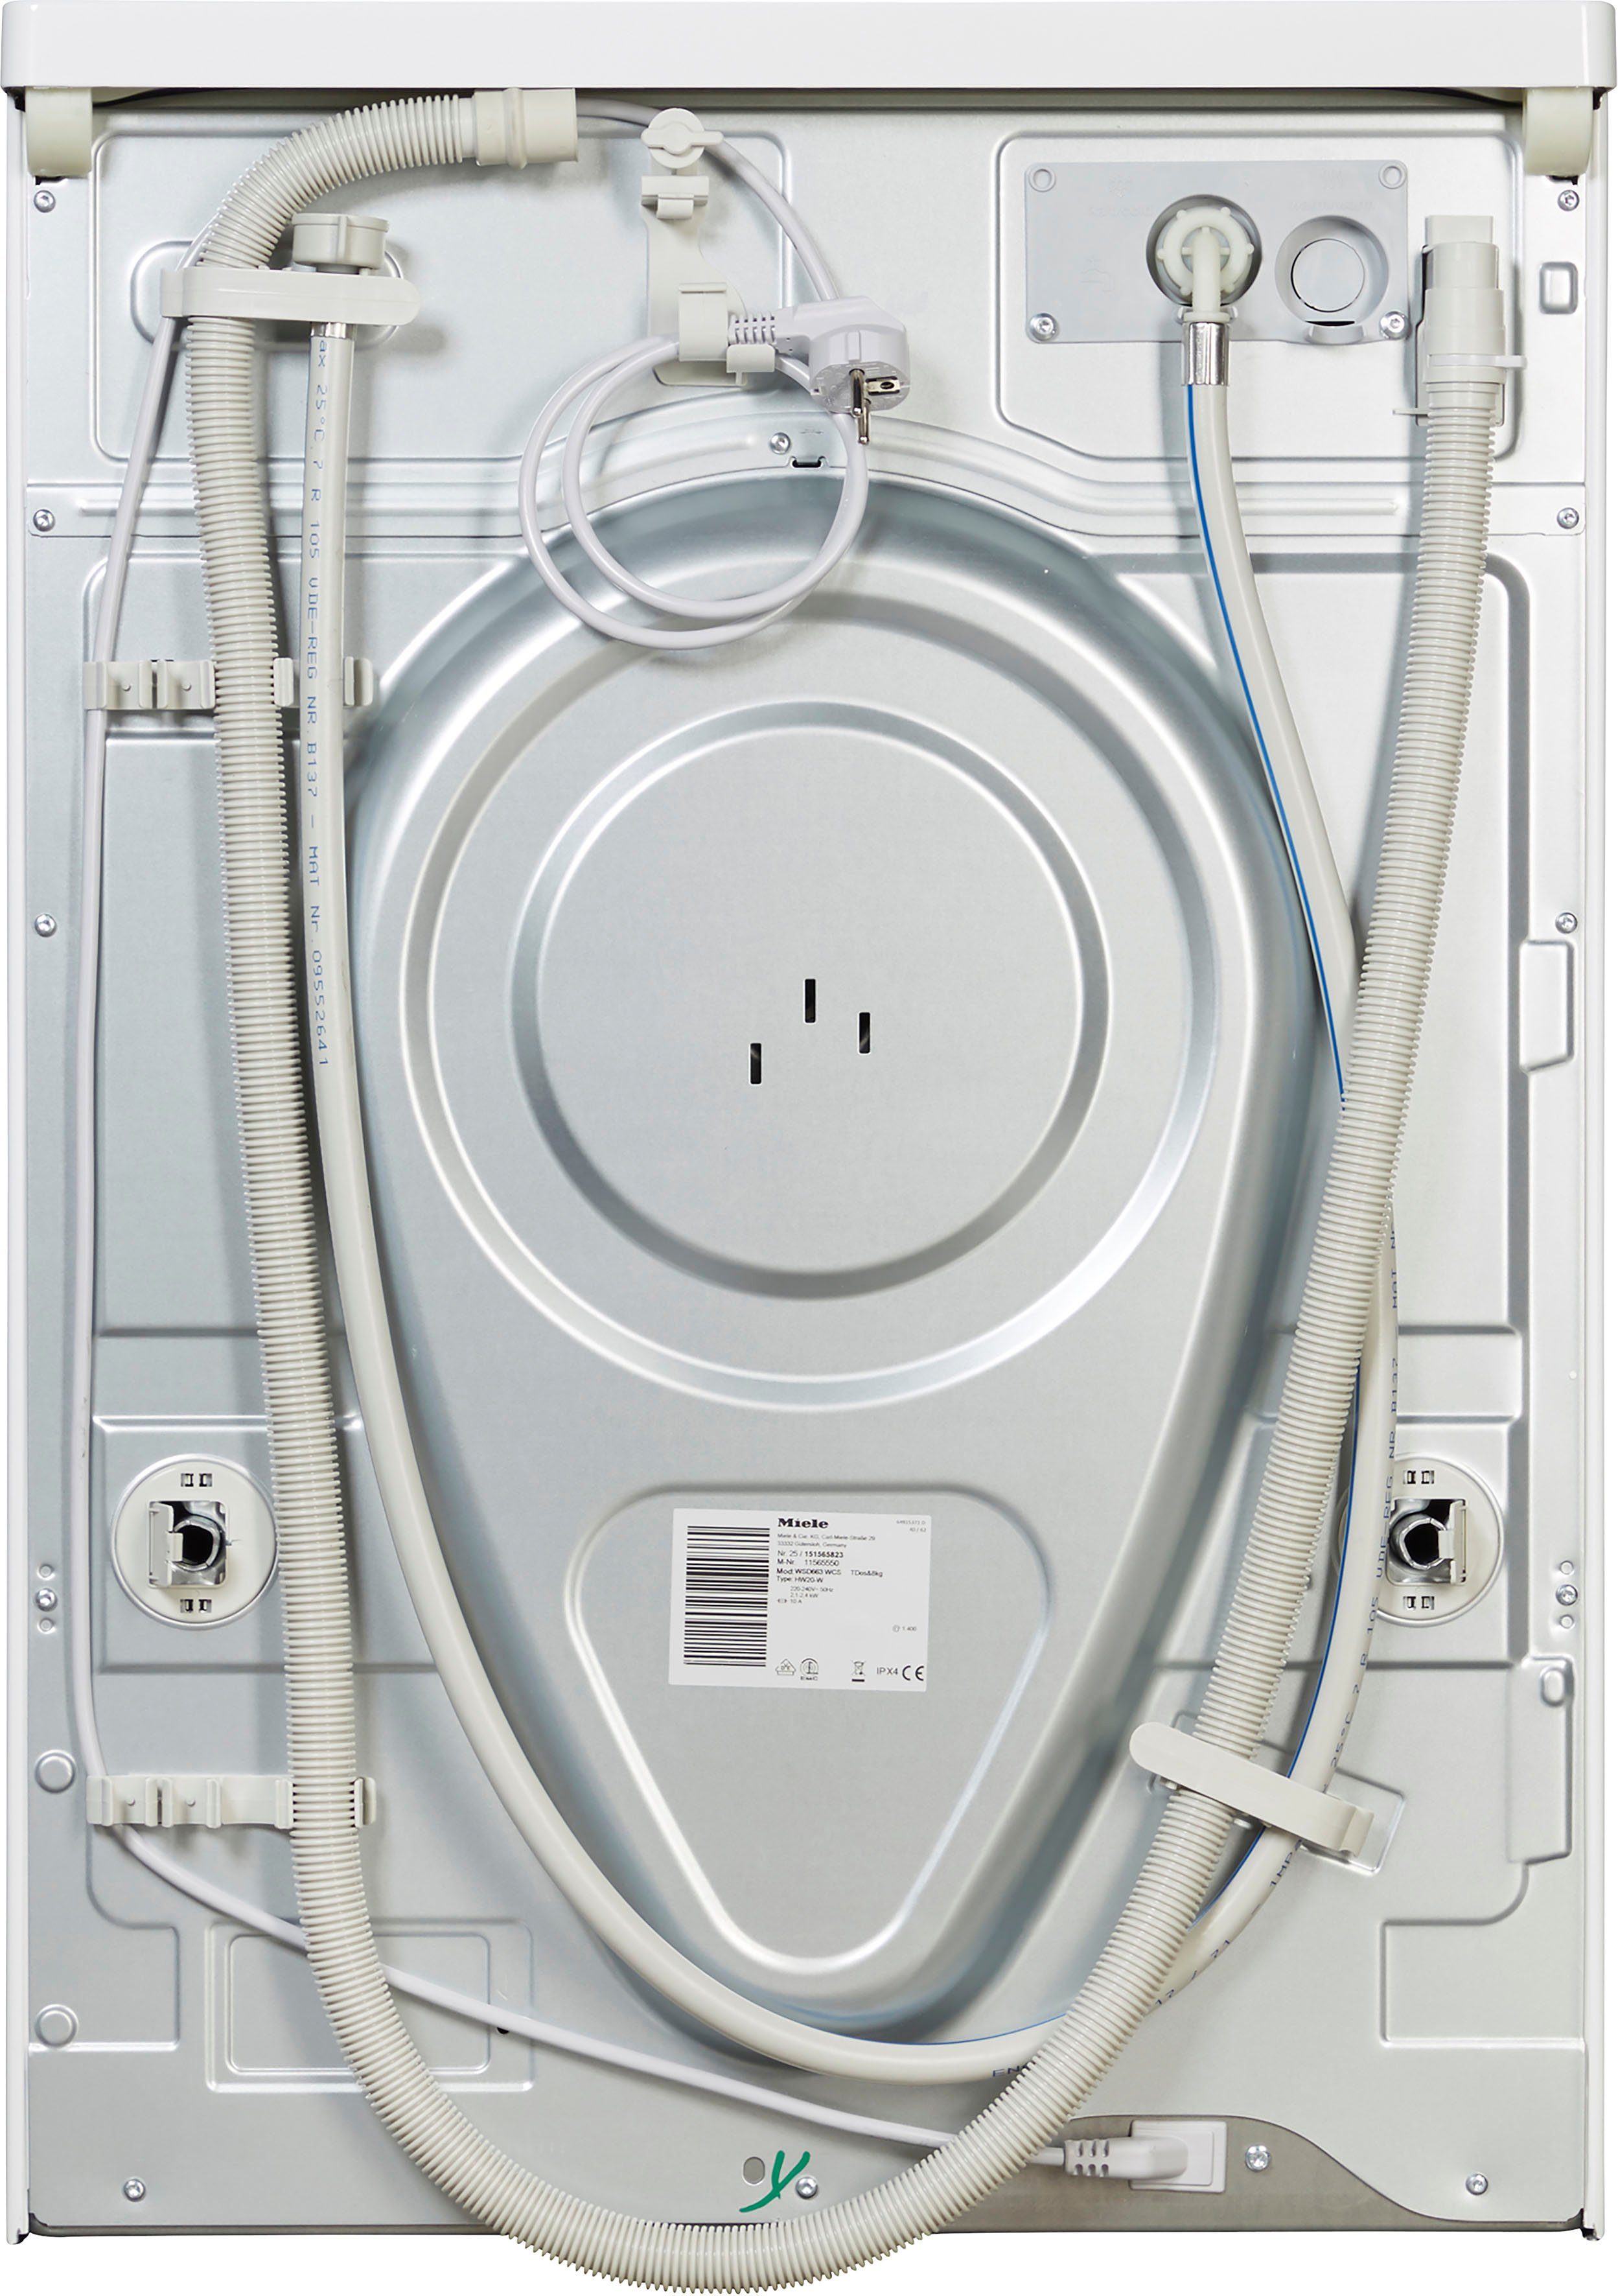 WCS ModernLife Waschmaschine U/min, 8 kg, WSD663 Miele TwinDos Waschmitteldosierung 1400 automatischen TDos&8kg, zur